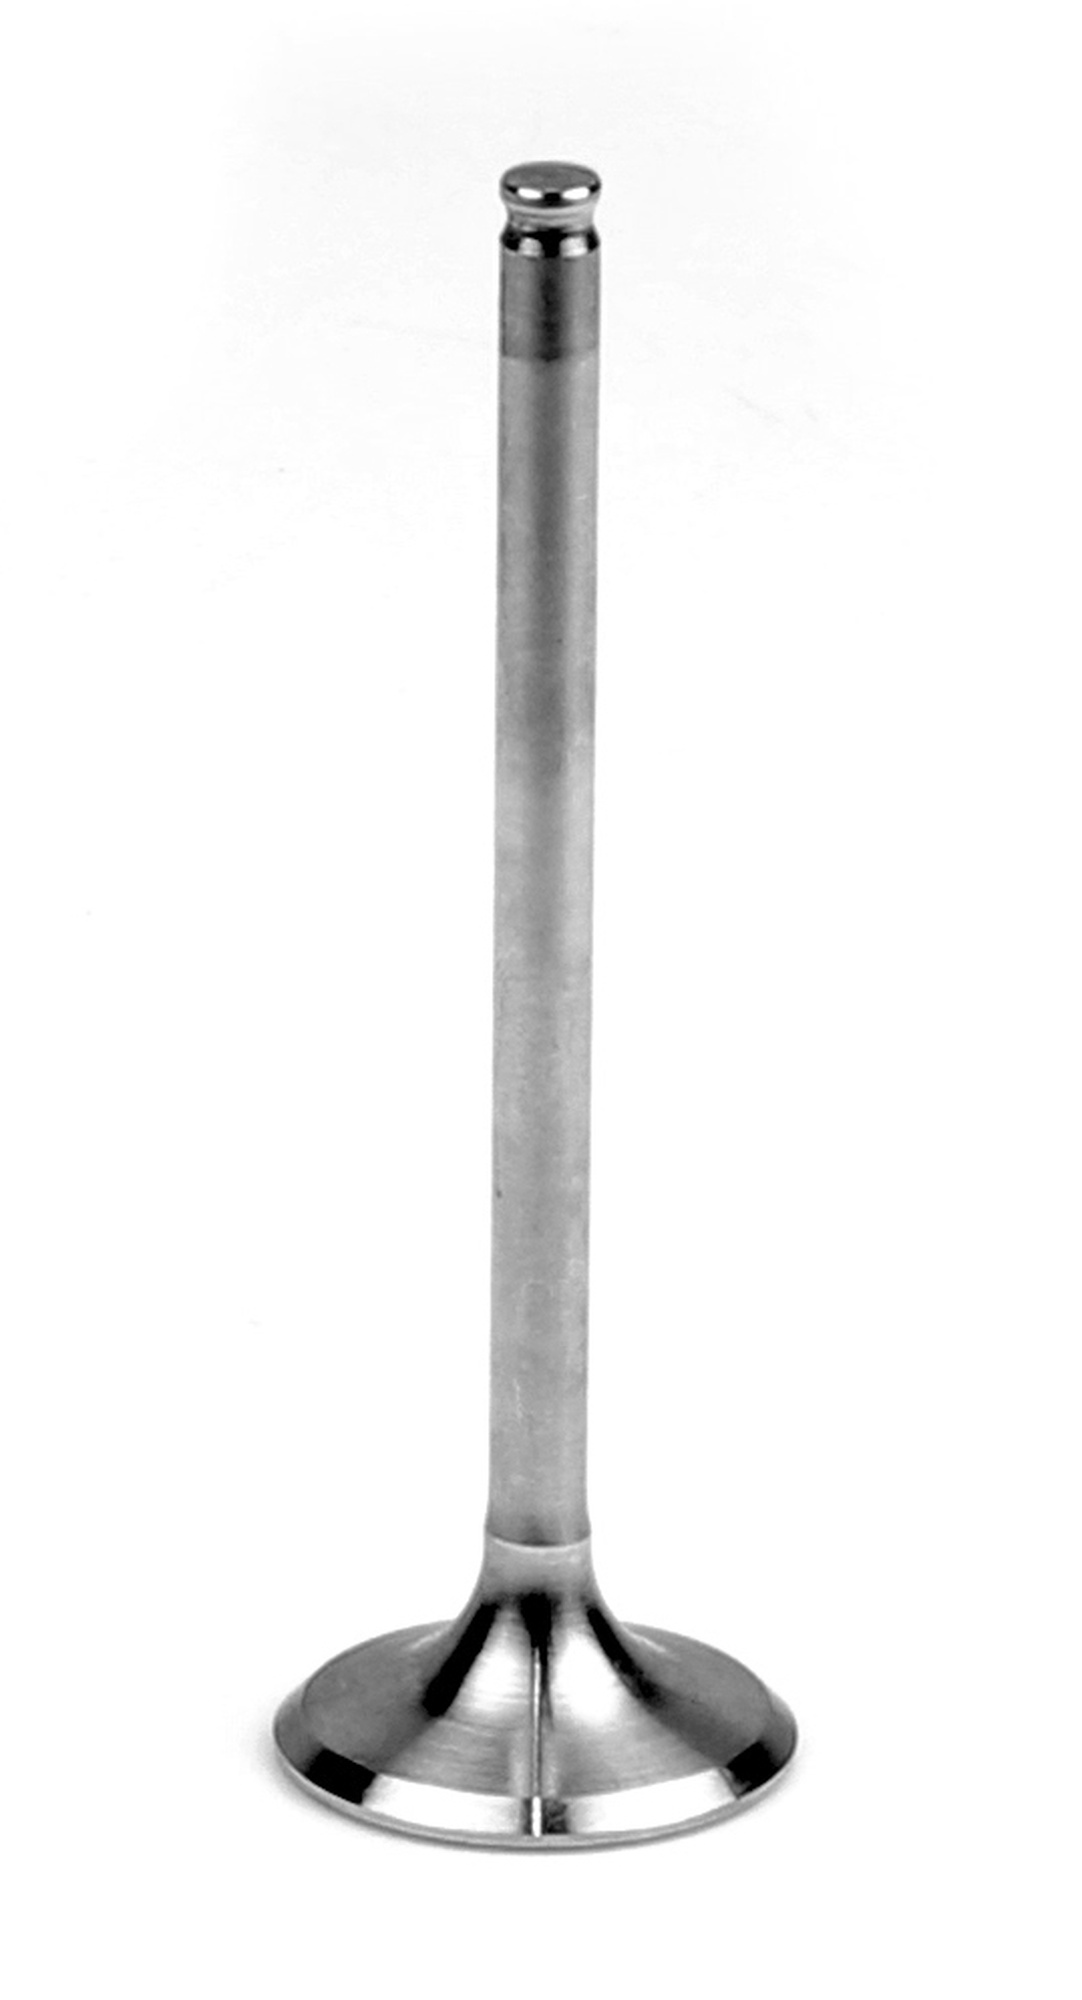 Obrázek produktu výfukový ventil ocelový, Athena